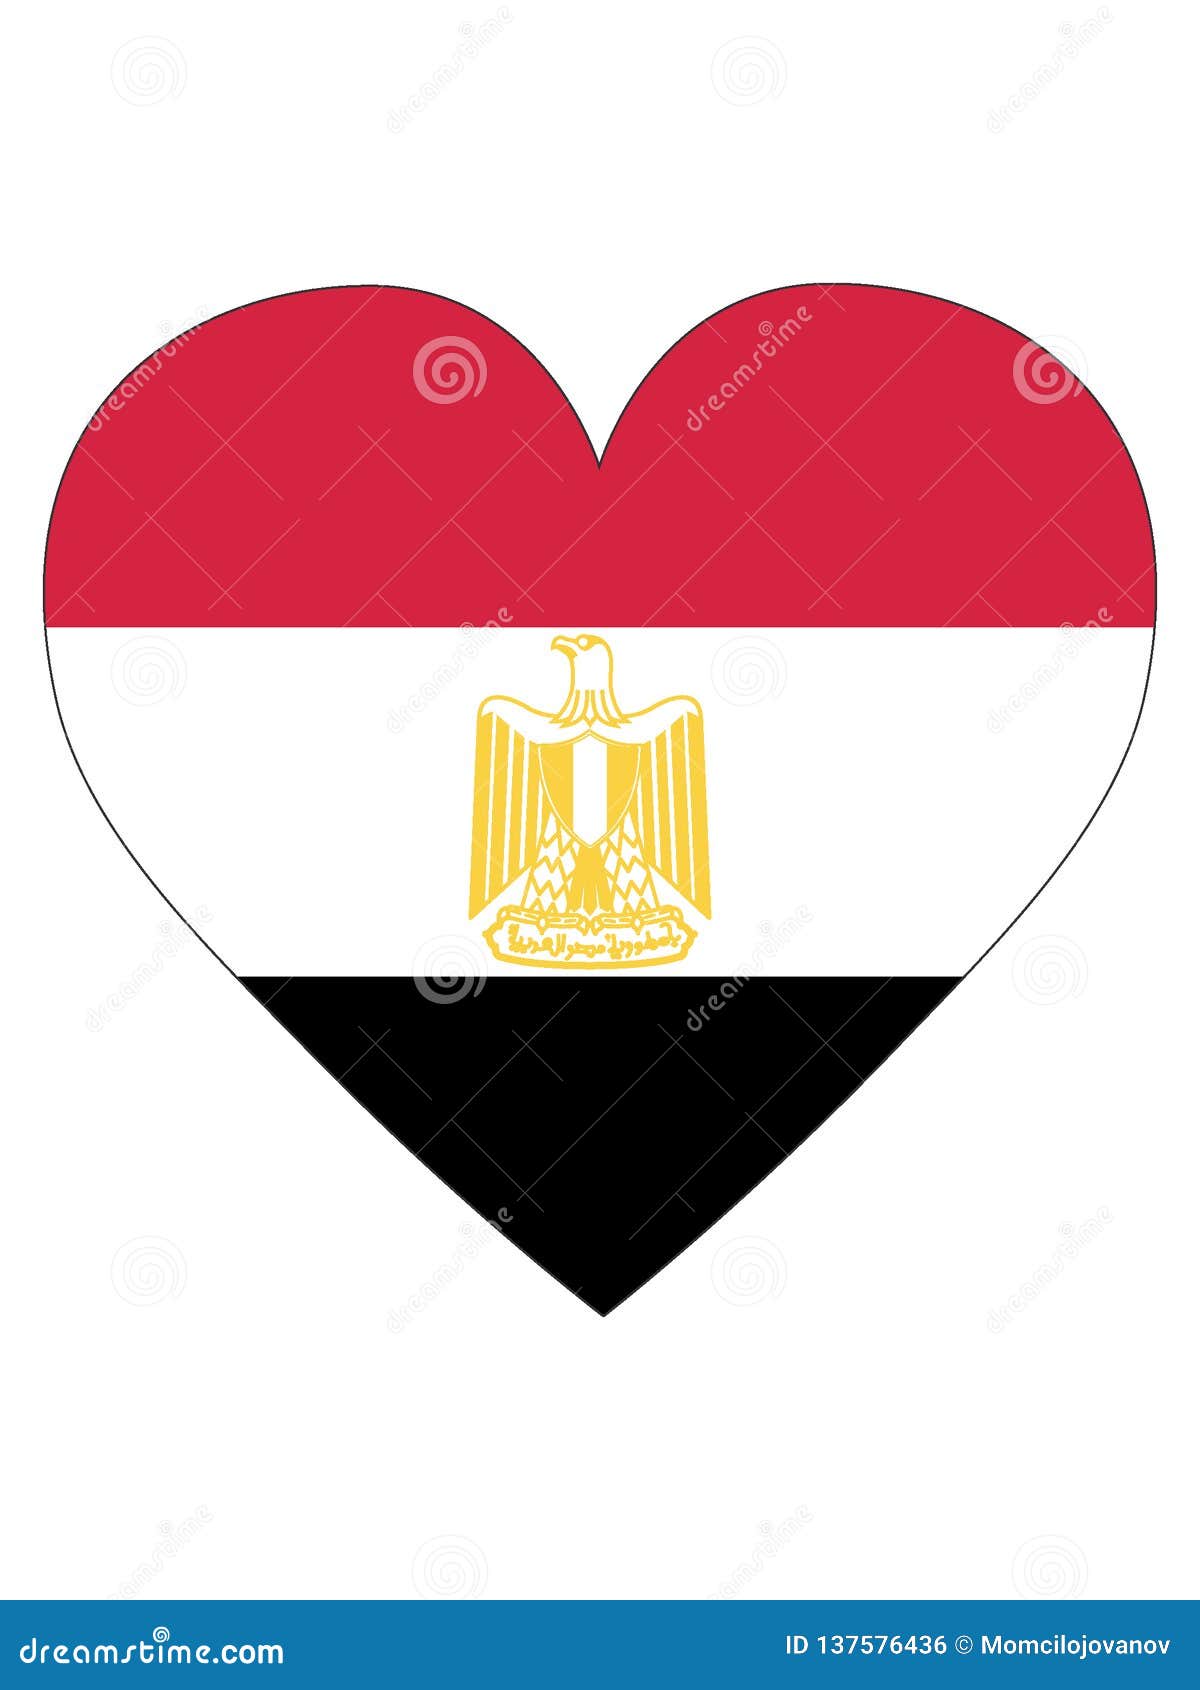 Heart Shaped Flag of Egypt stock vector. Illustration of leone - 137576436